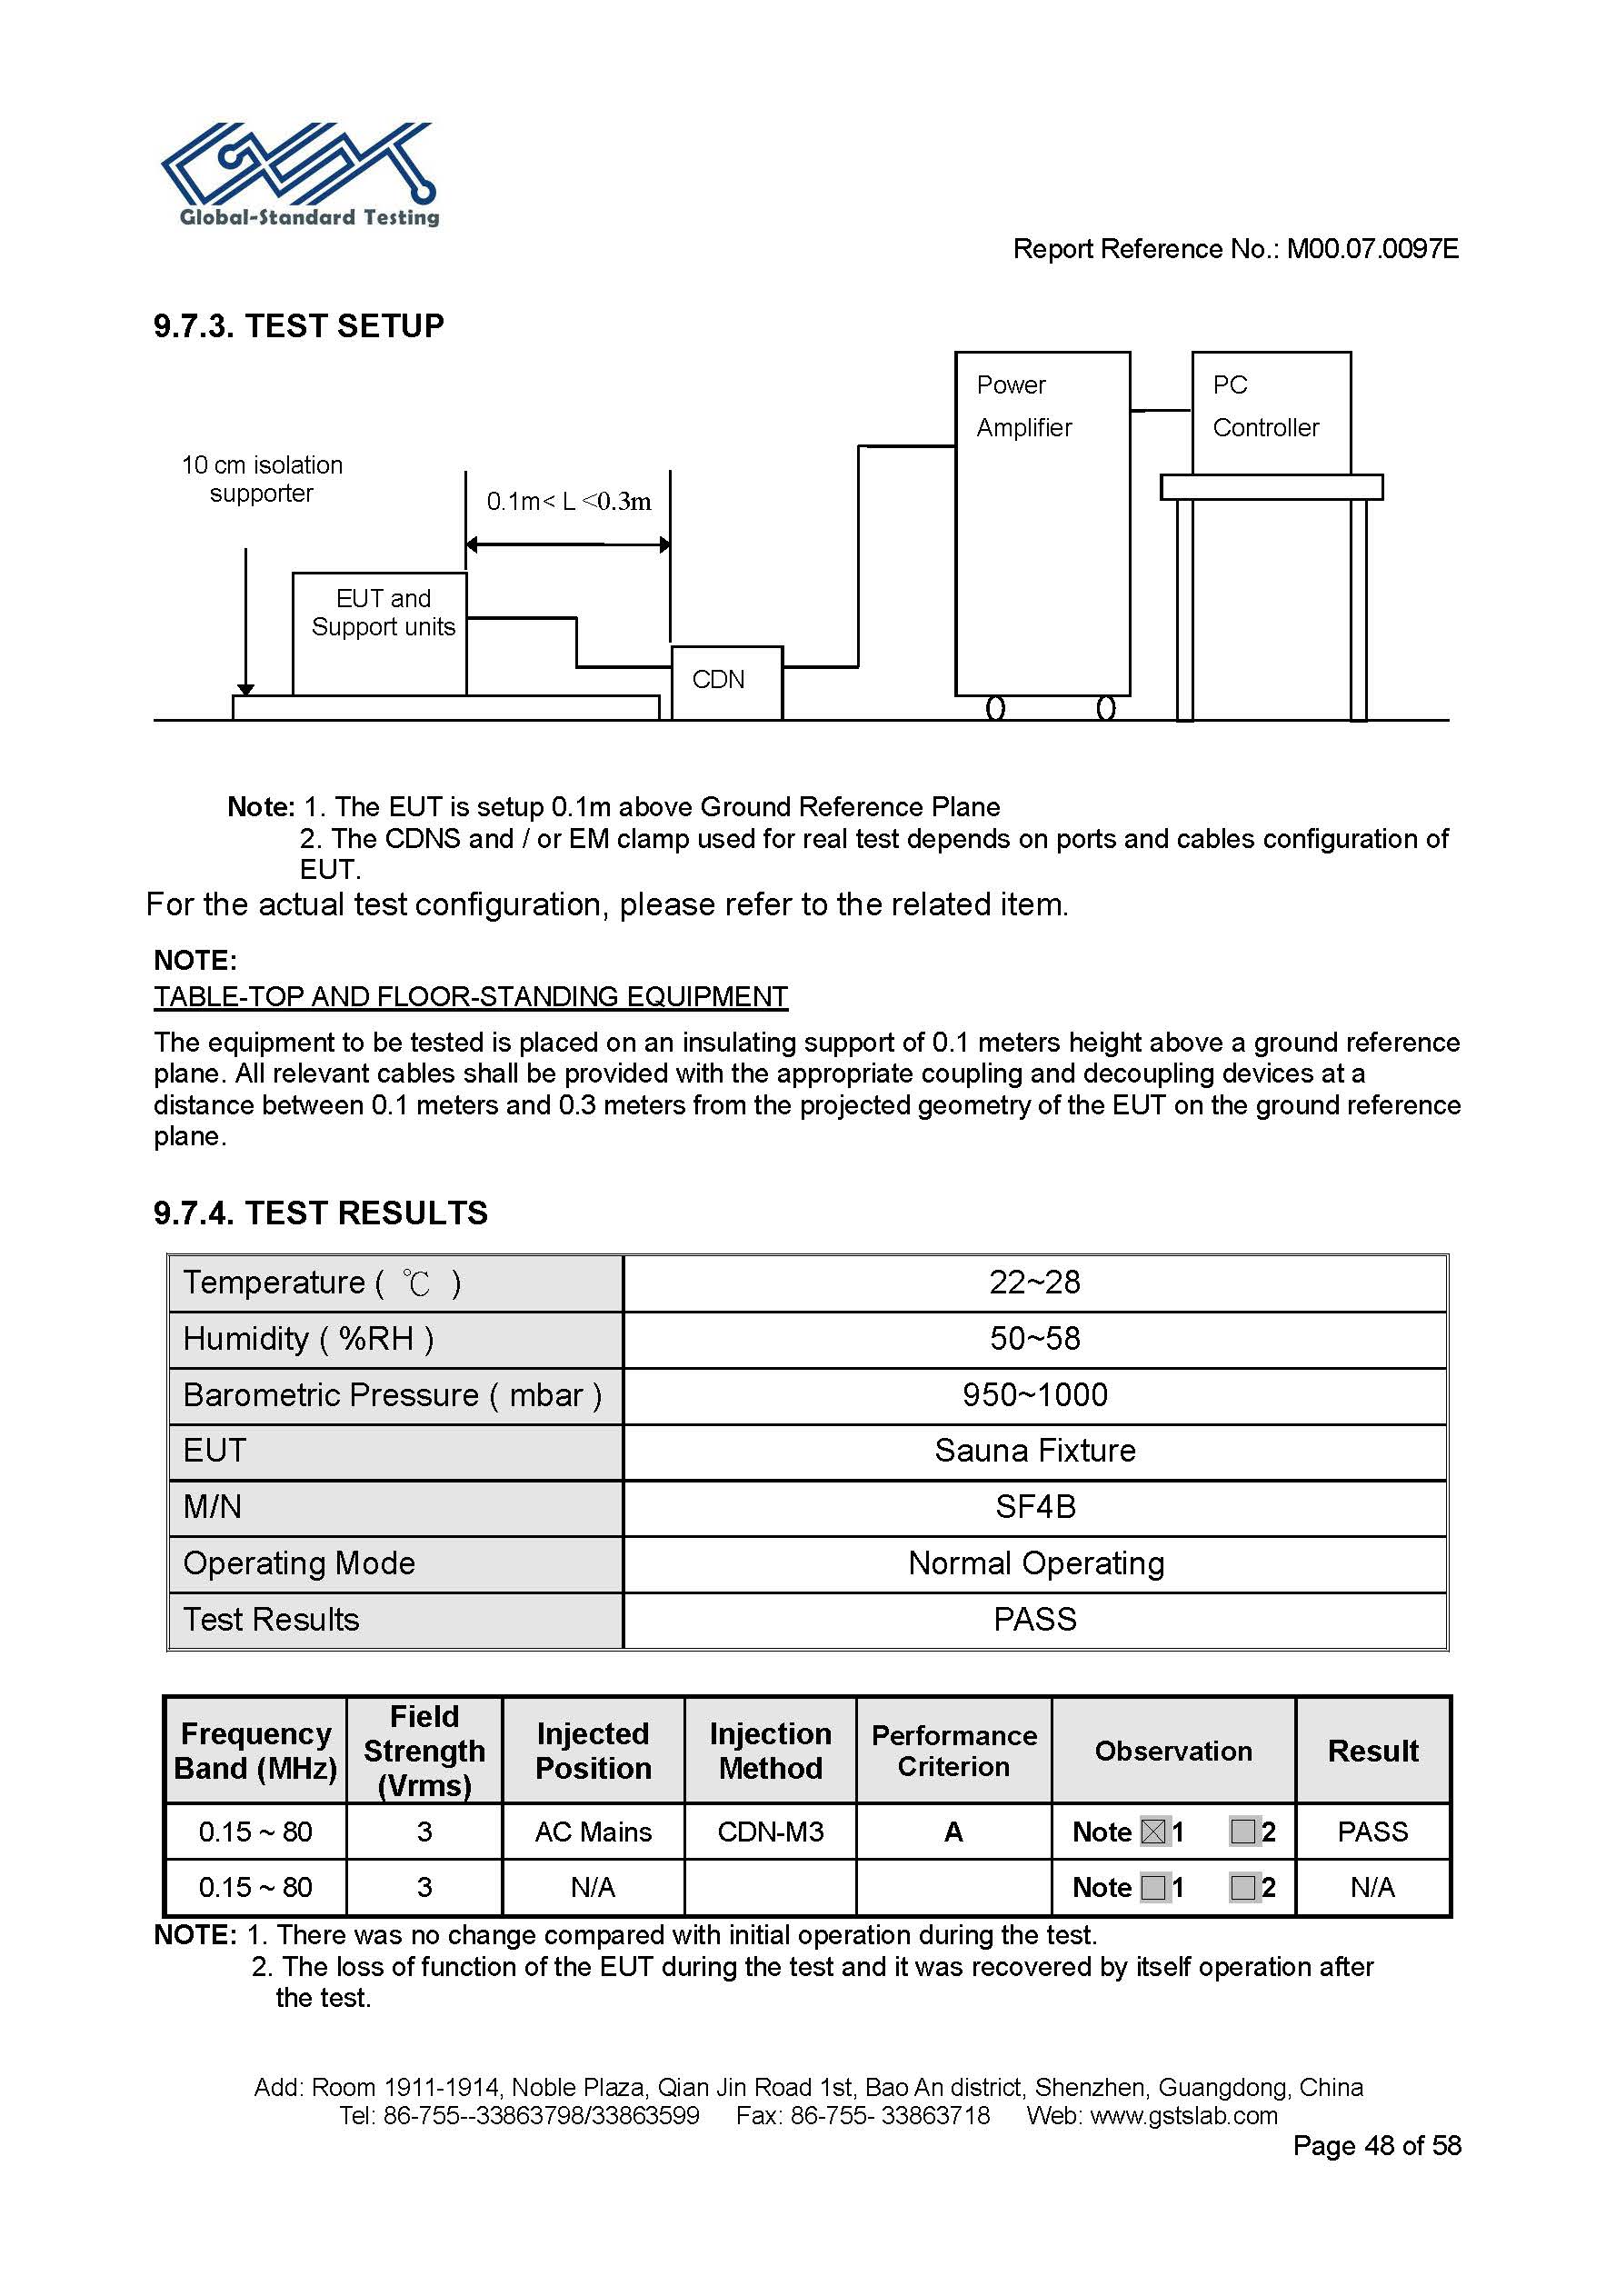 Sauna Fix EU CE EMC Test Report Page 48